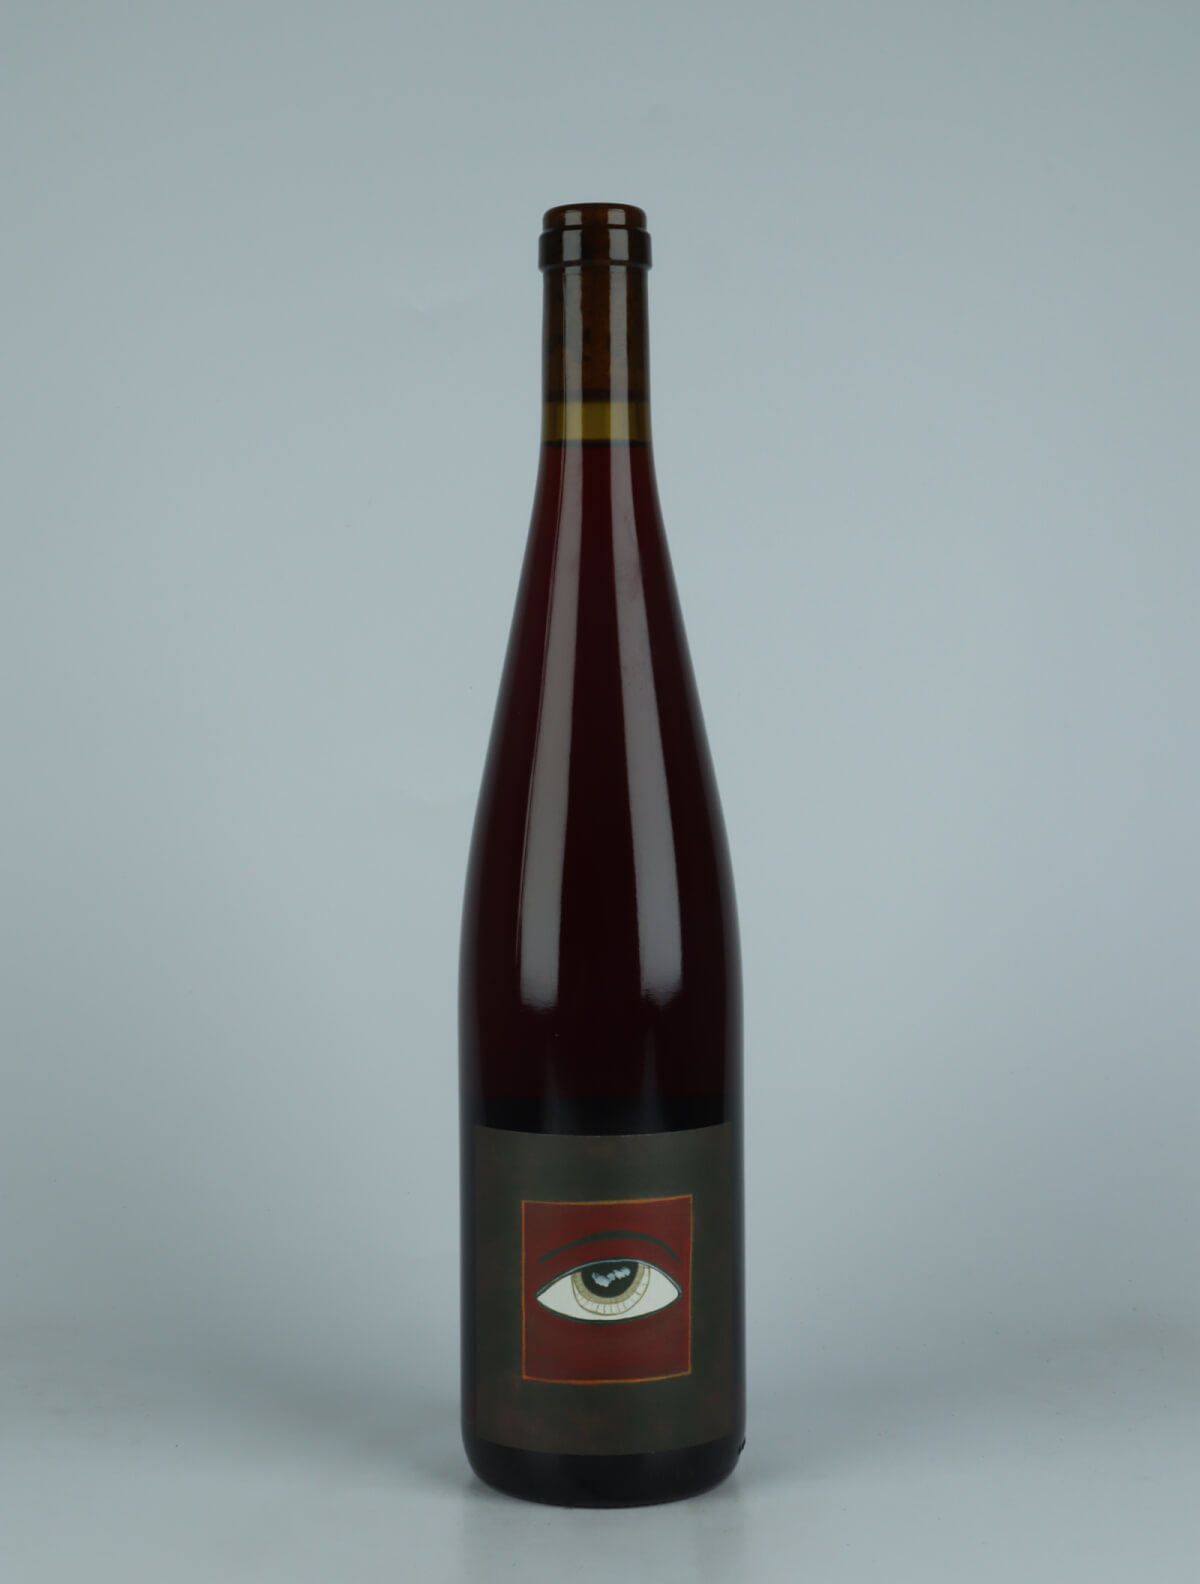 En flaske 2023 Pinot Noir Rødvin fra Domaine Rietsch, Alsace i Frankrig